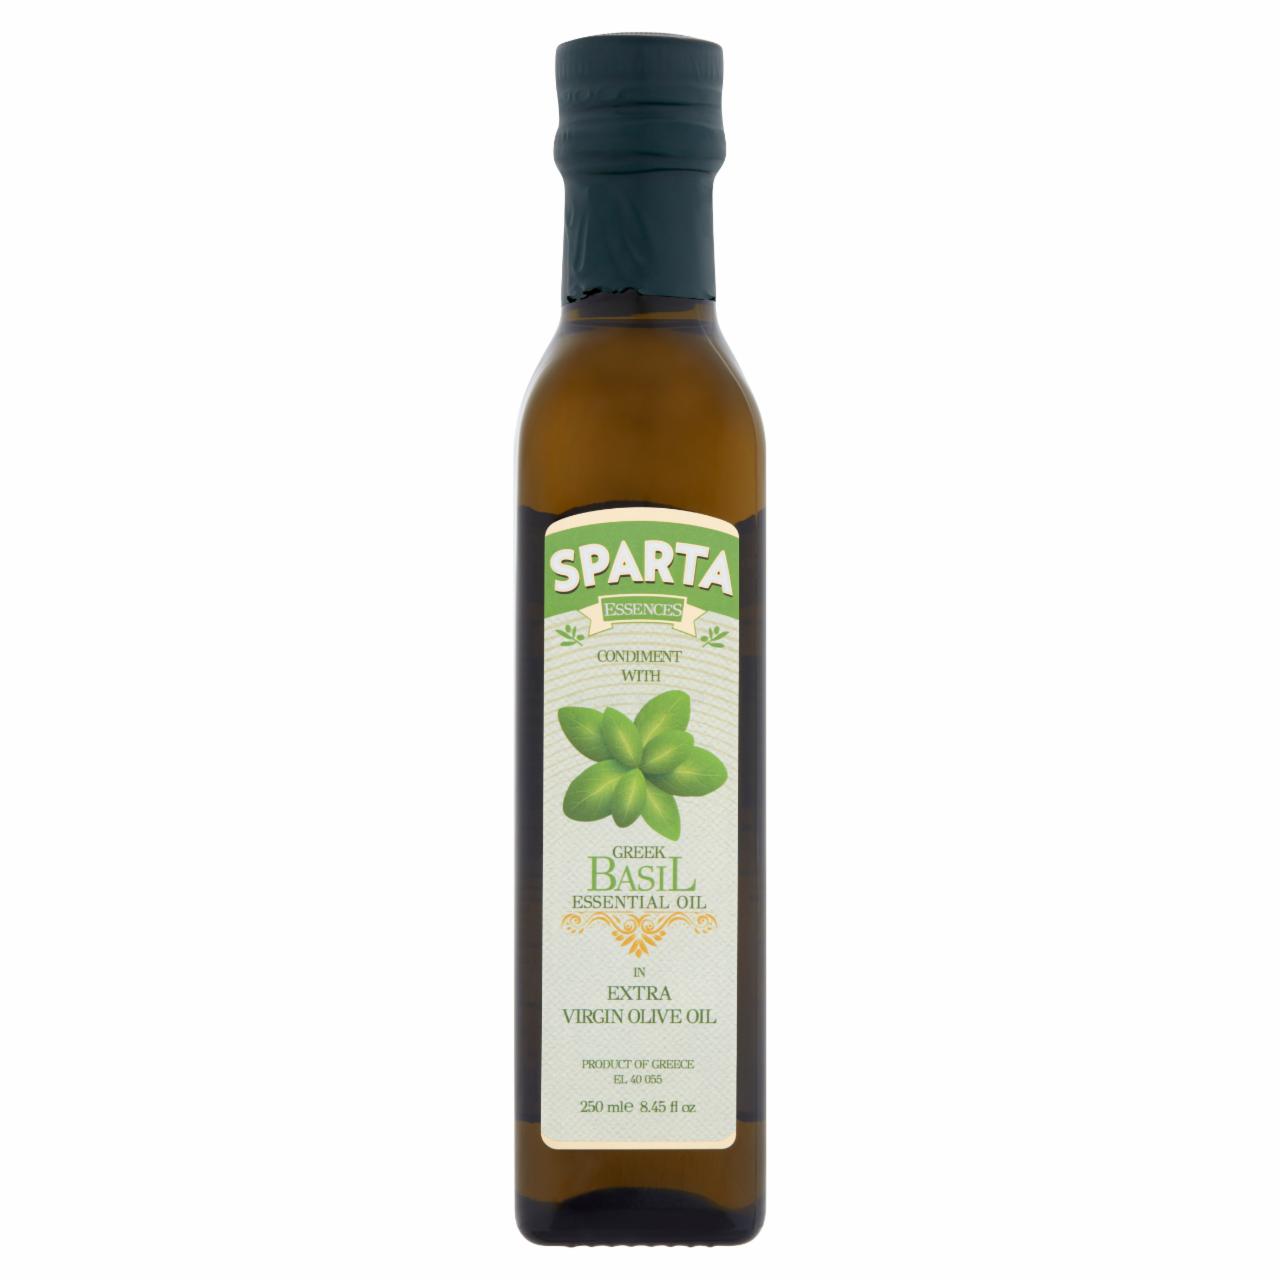 Képek - Sparta Essences extra szűz olívaolaj görög bazsalikom esszencia olajjal 250 ml